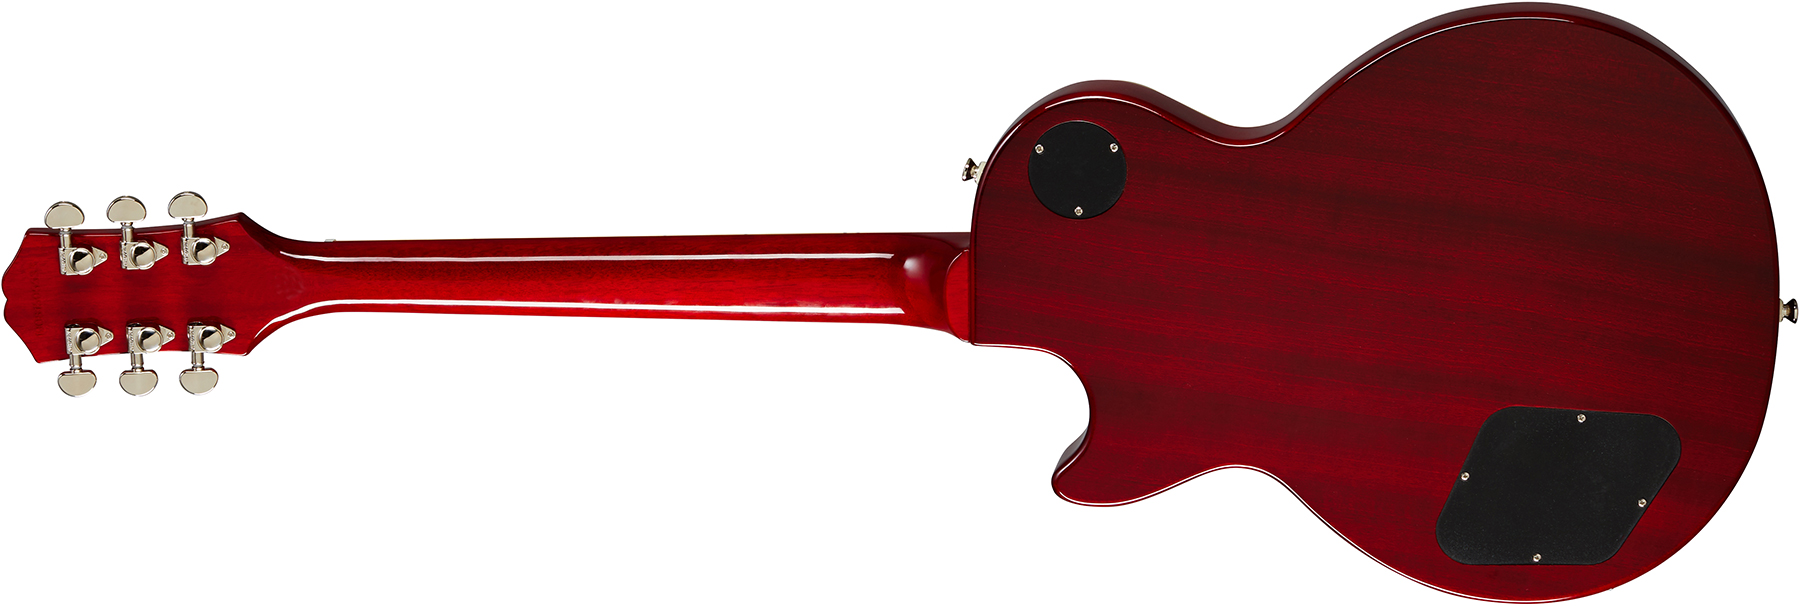 Epiphone Les Paul Standard 60s 2h Ht Rw - Bourbon Burst - Guitarra eléctrica de corte único. - Variation 1